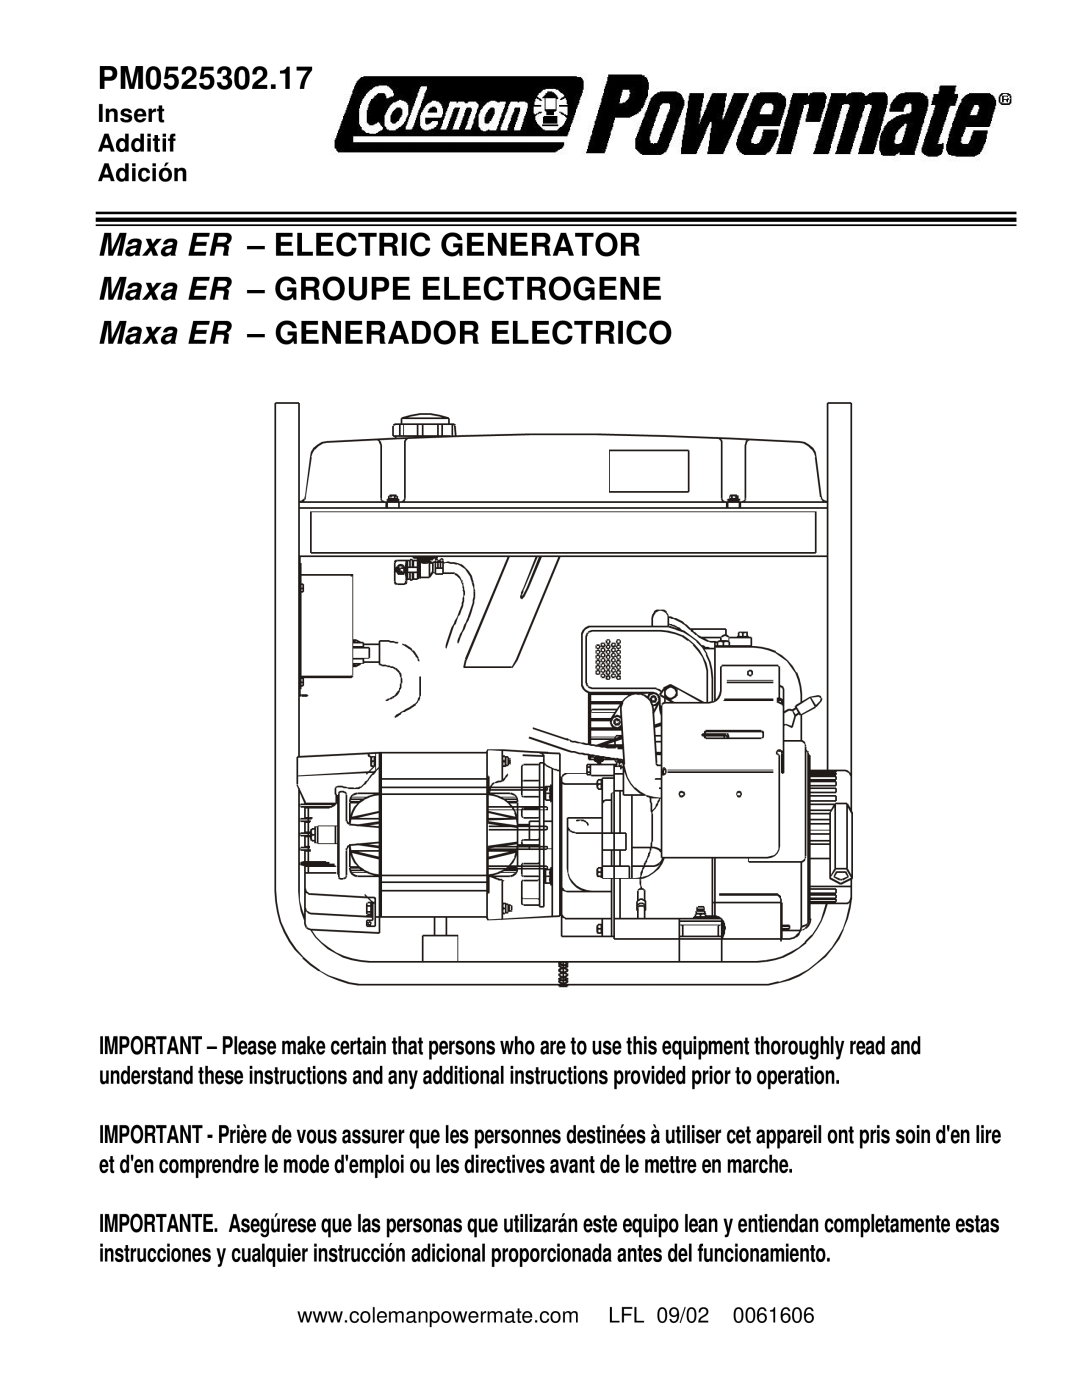 Powermate PM0525302.17 manual Maxa ER - ELECTRIC GENERATOR, Maxa ER - GROUPE ELECTROGENE, Maxa ER - GENERADOR ELECTRICO 